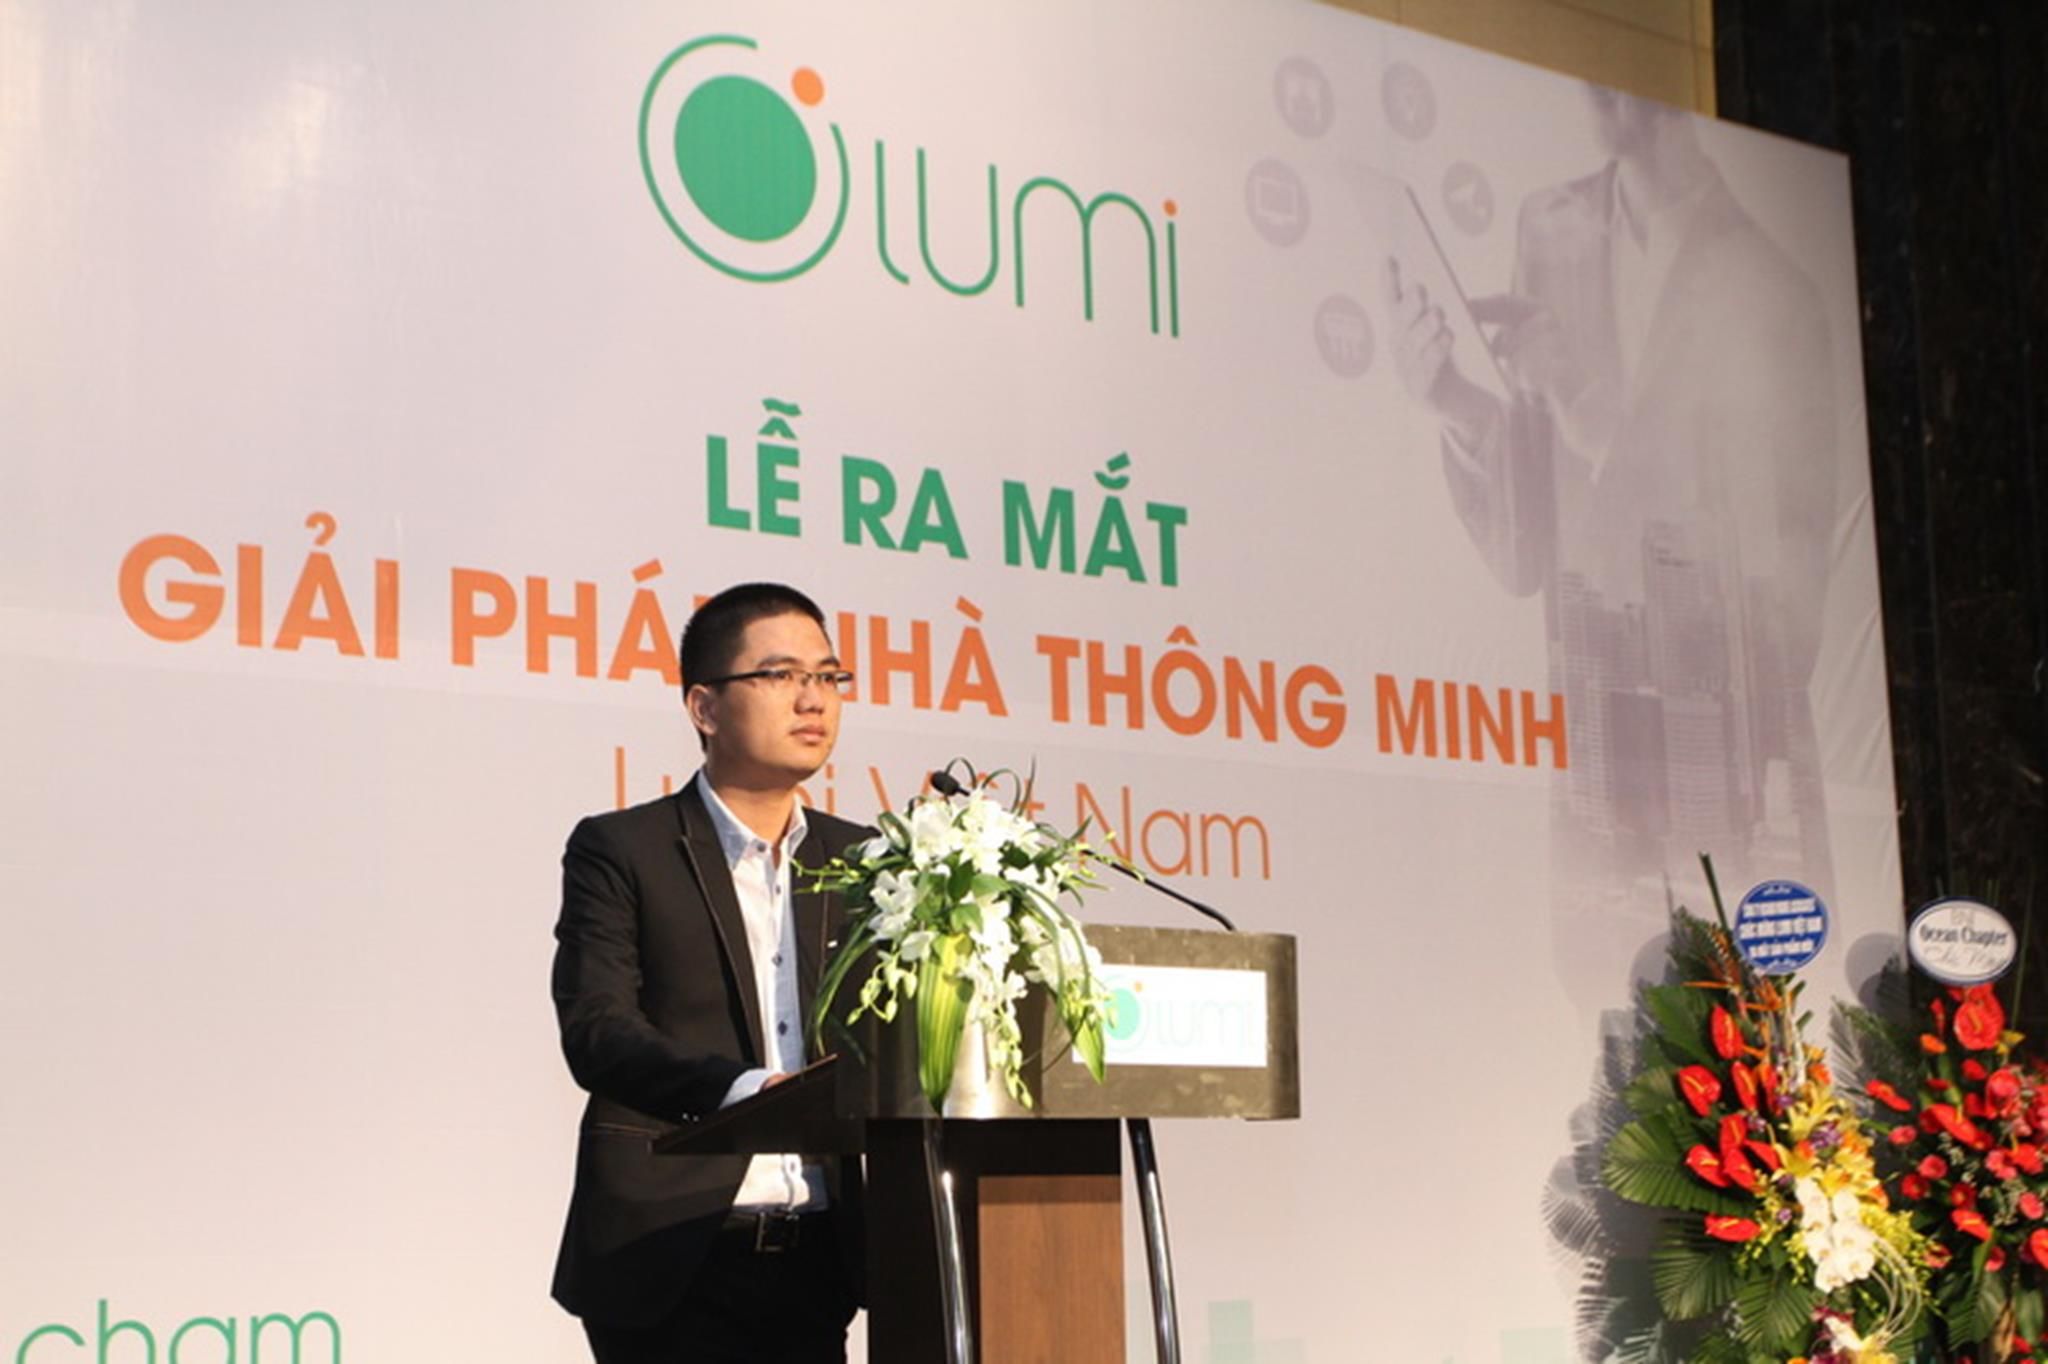 Ông Nguyễn Tuấn Anh – CT HĐQT Công ty Lumi phát biểu khai mạc